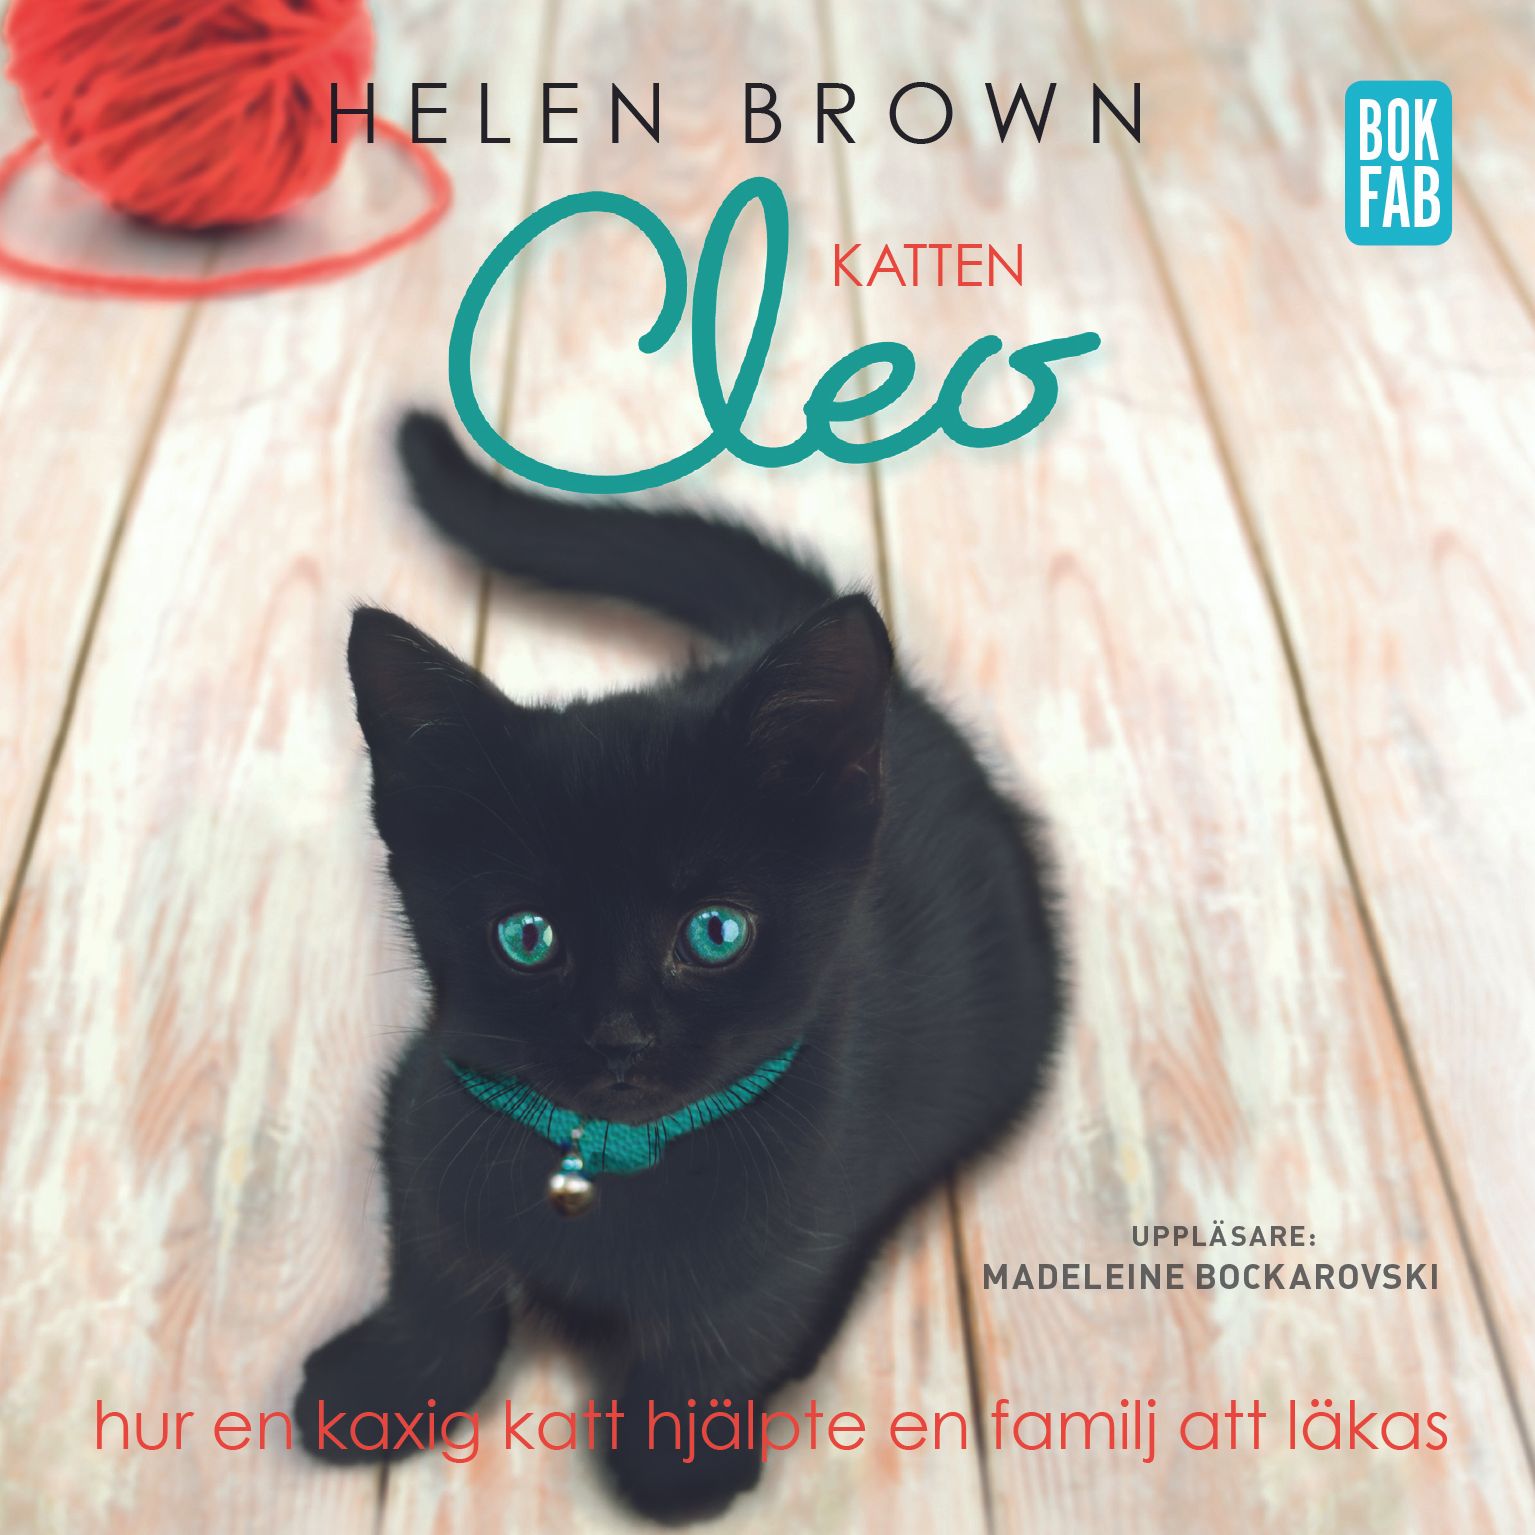 Katten Cleo - Hur en kaxig katt hjälpte en familj att läkas, audiobook by Helen Brown